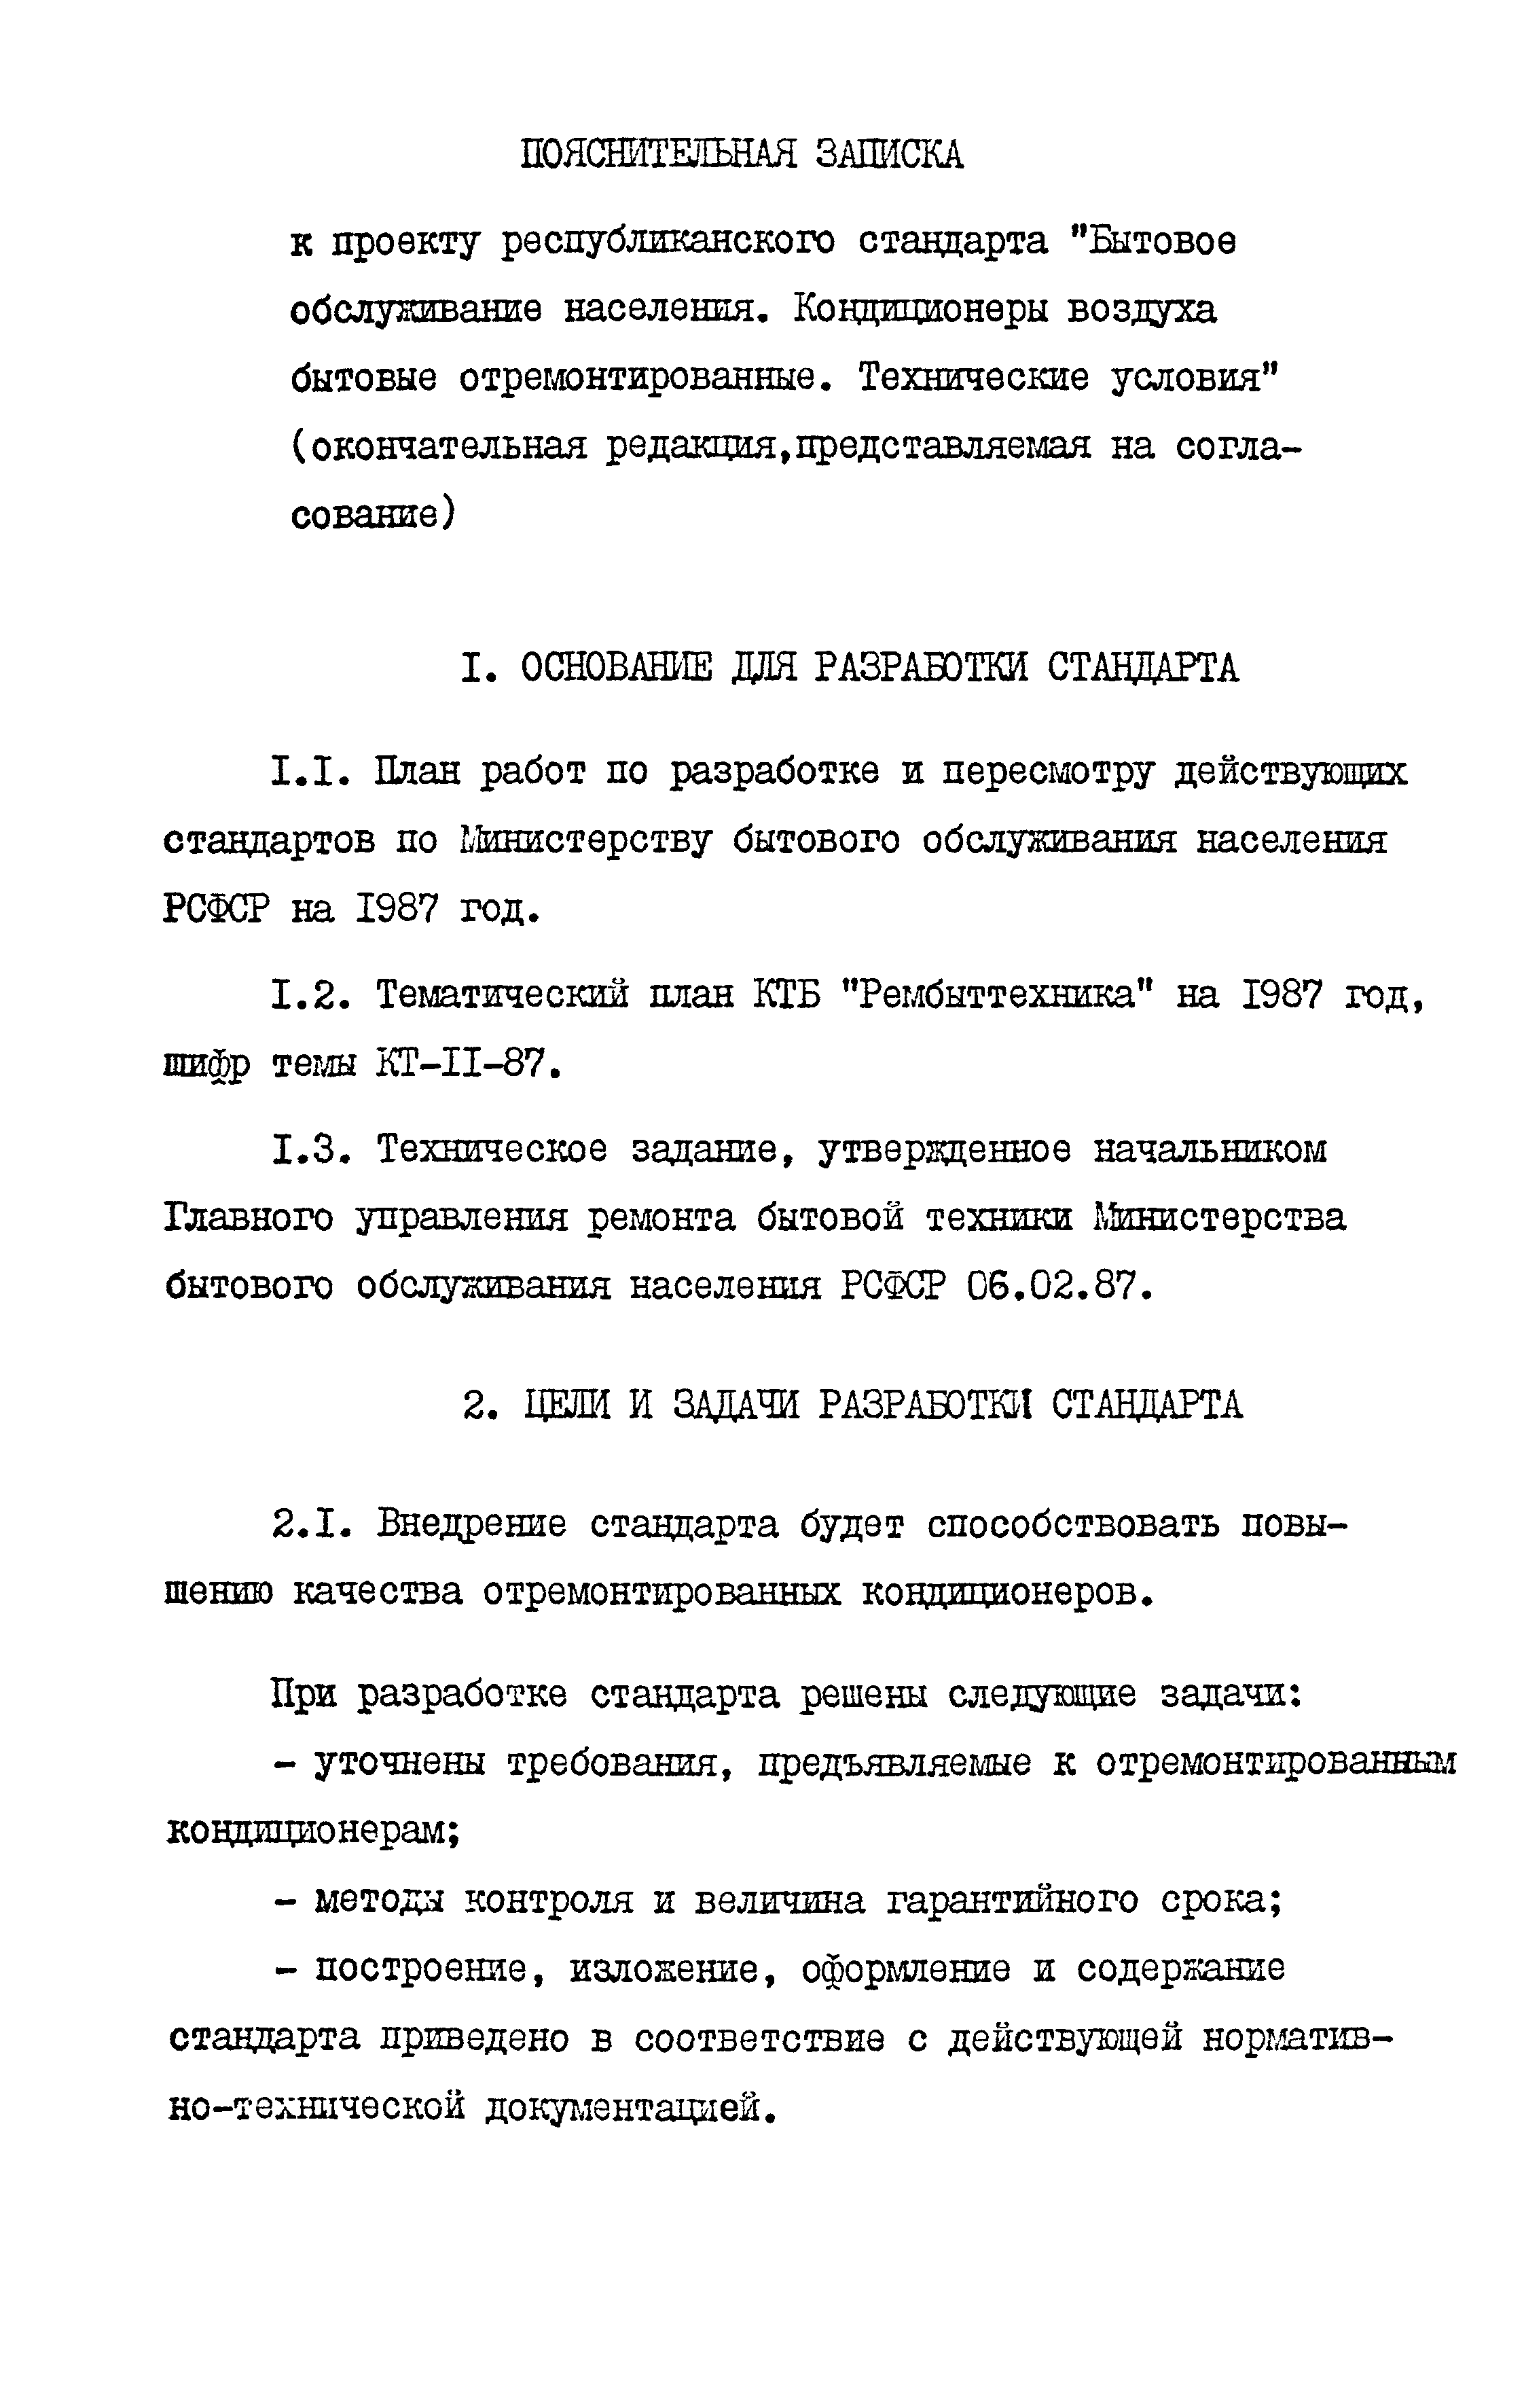 РСТ РСФСР 198-88